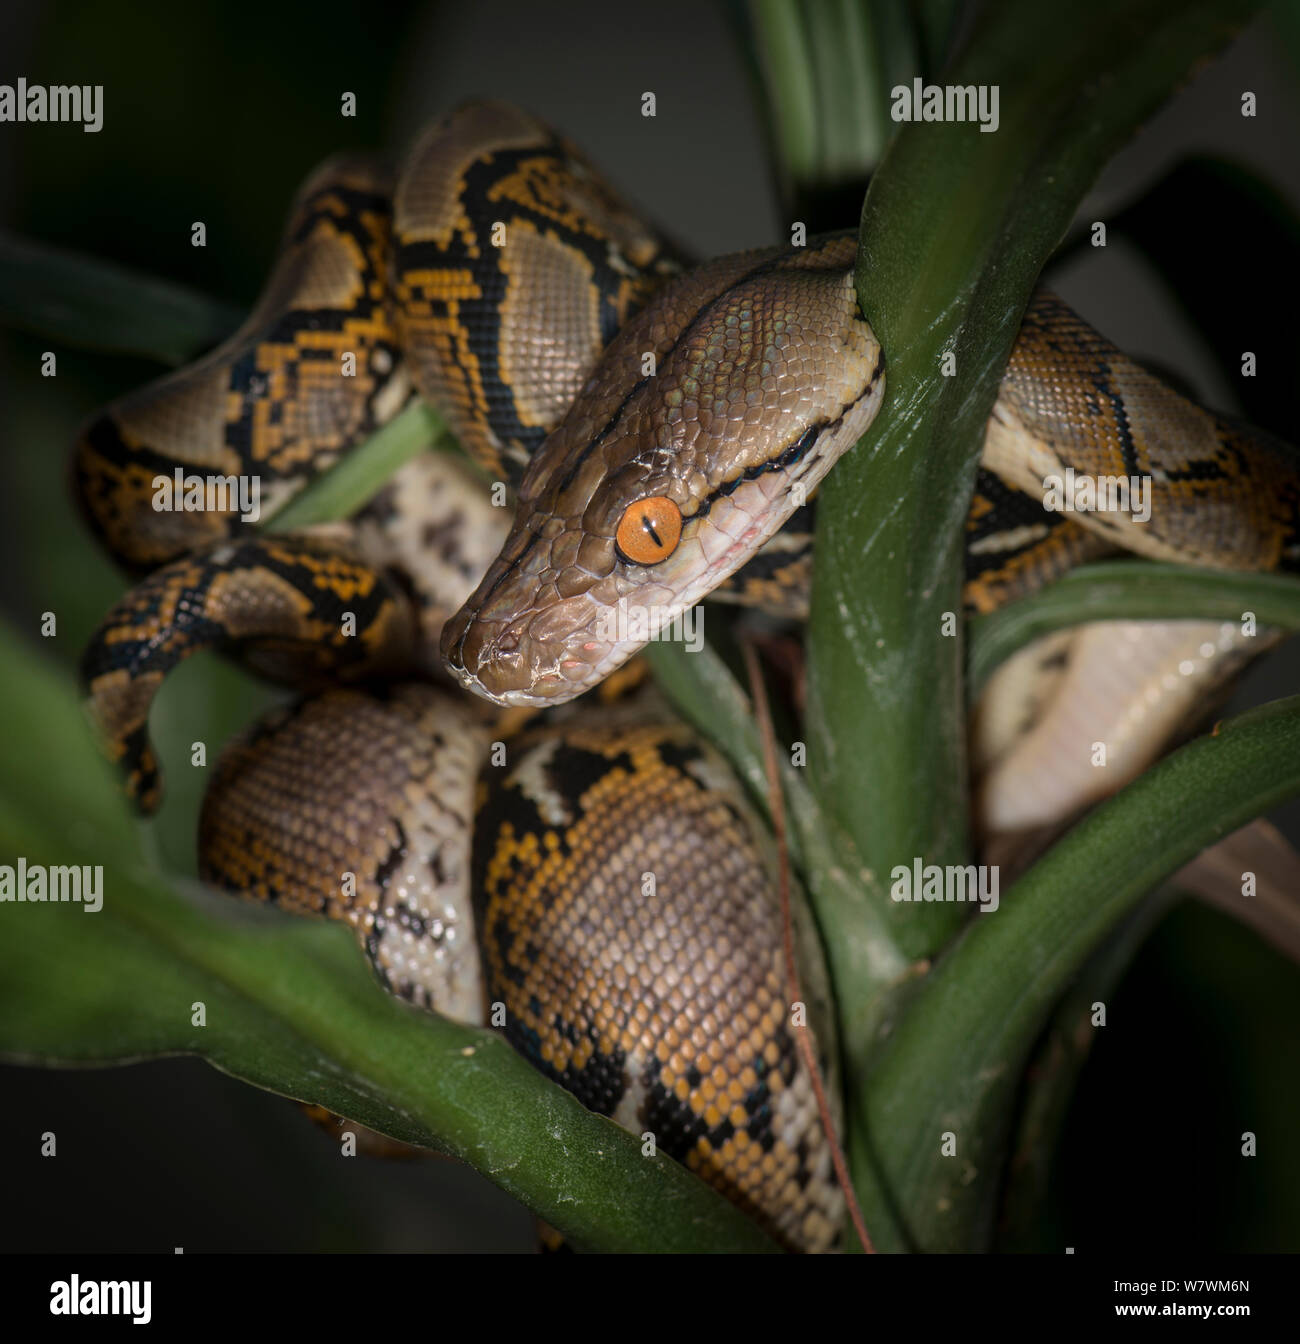 Netzpython (Malayopython reticulatus) unverlierbaren, beheimatet in Südostasien. Stockfoto